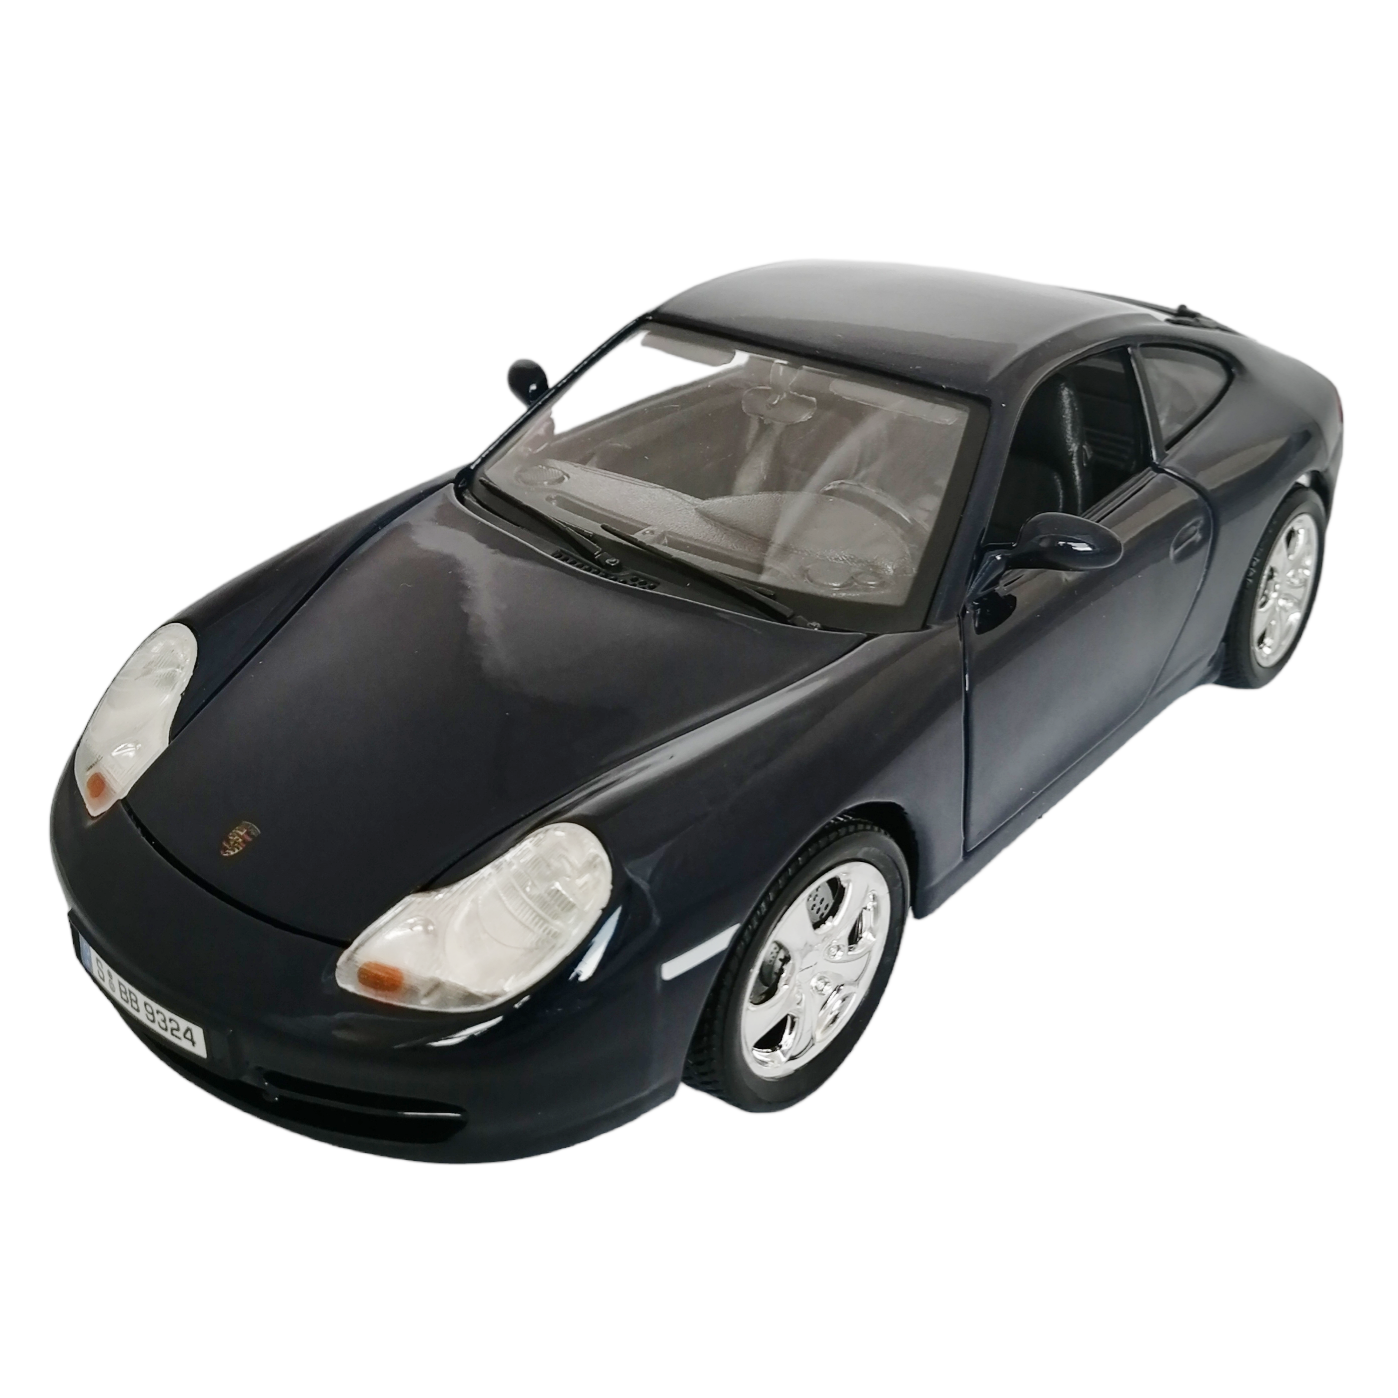 Коллекционная модель автомобиля Bburago Porsche 911 Carrera 4, масштаб 1:18, 18-12037